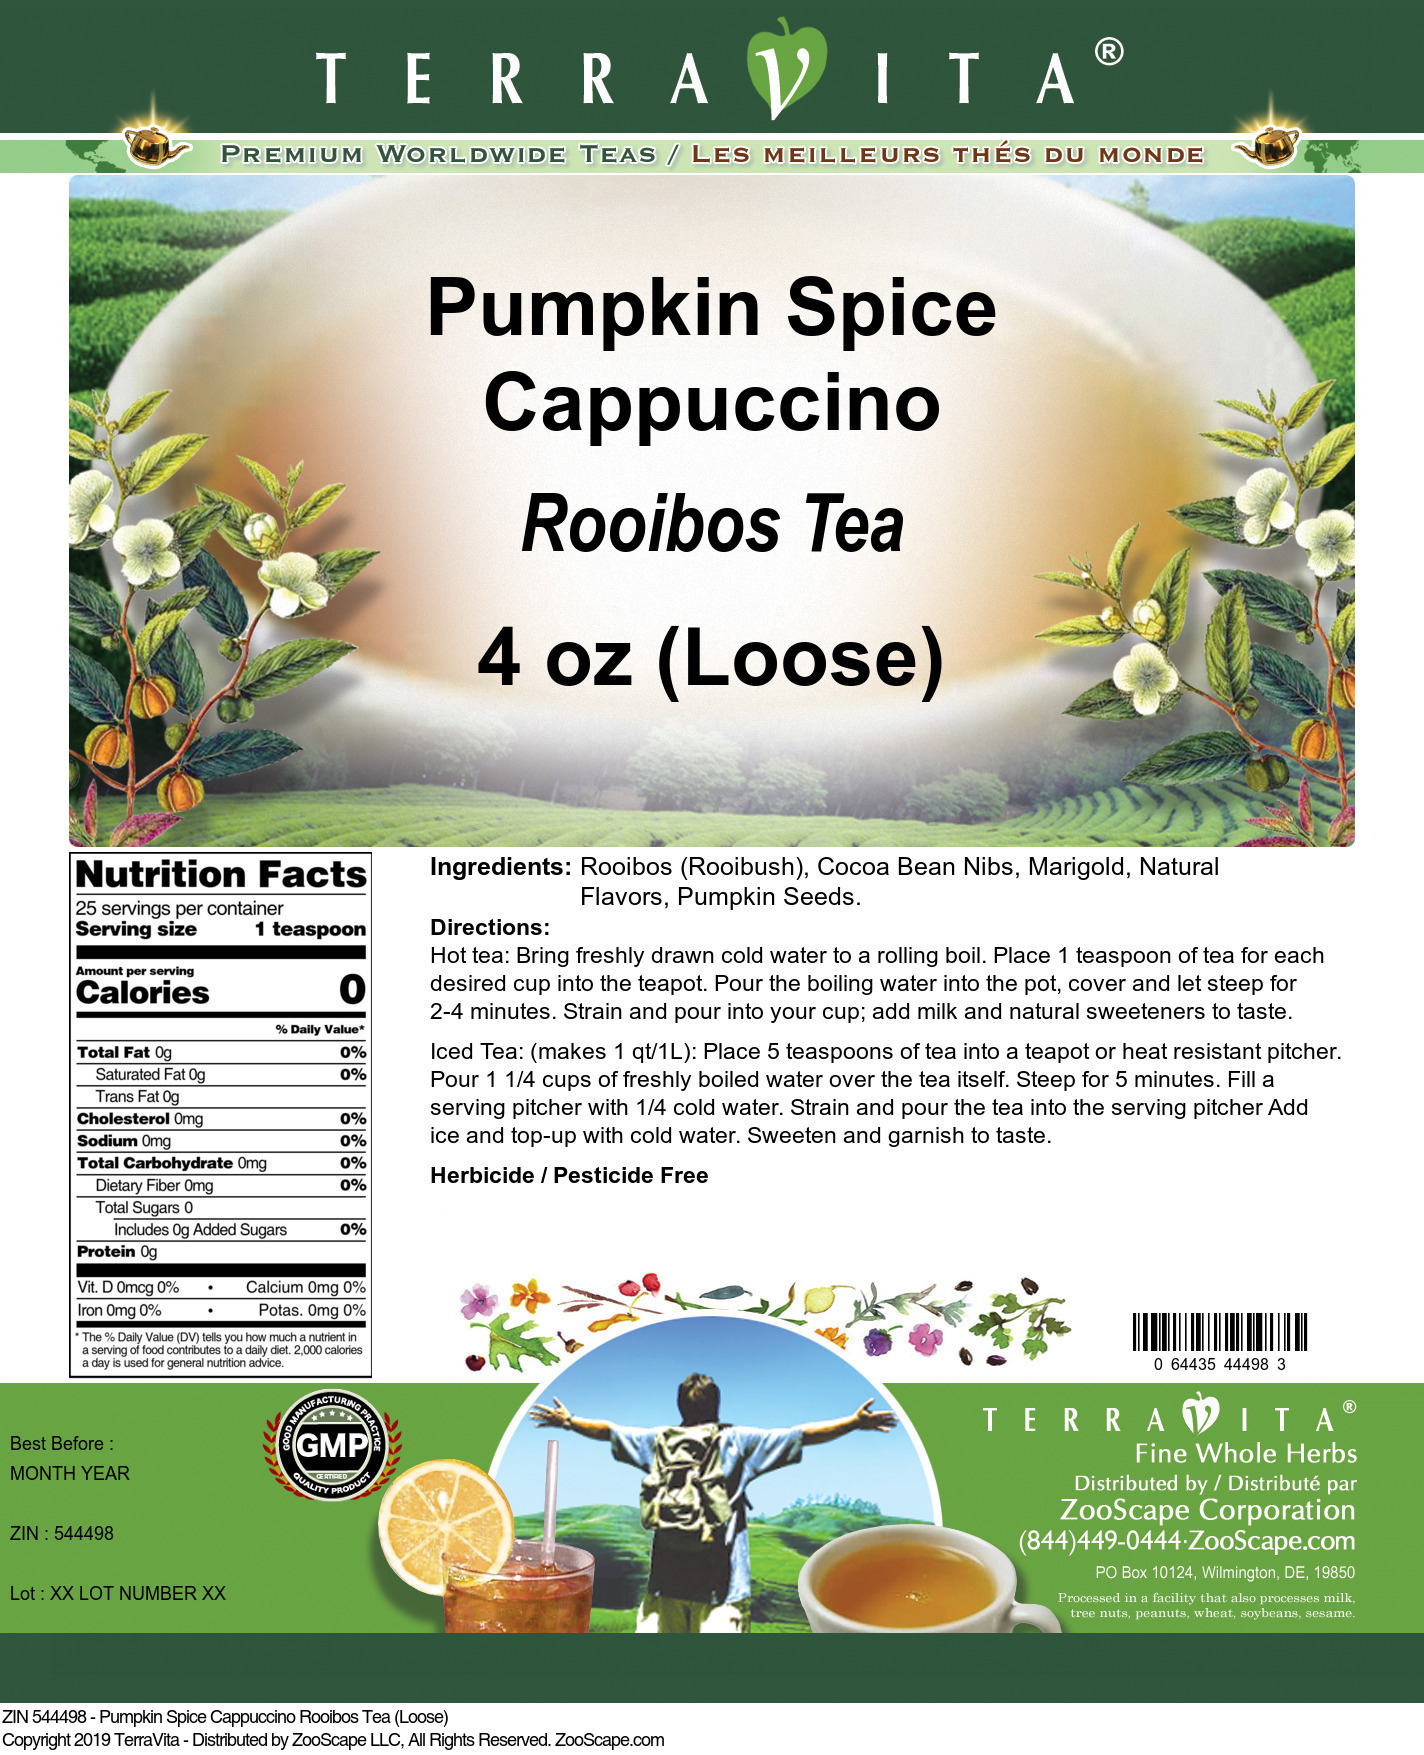 Pumpkin Spice Cappuccino Rooibos Tea (Loose) - Label